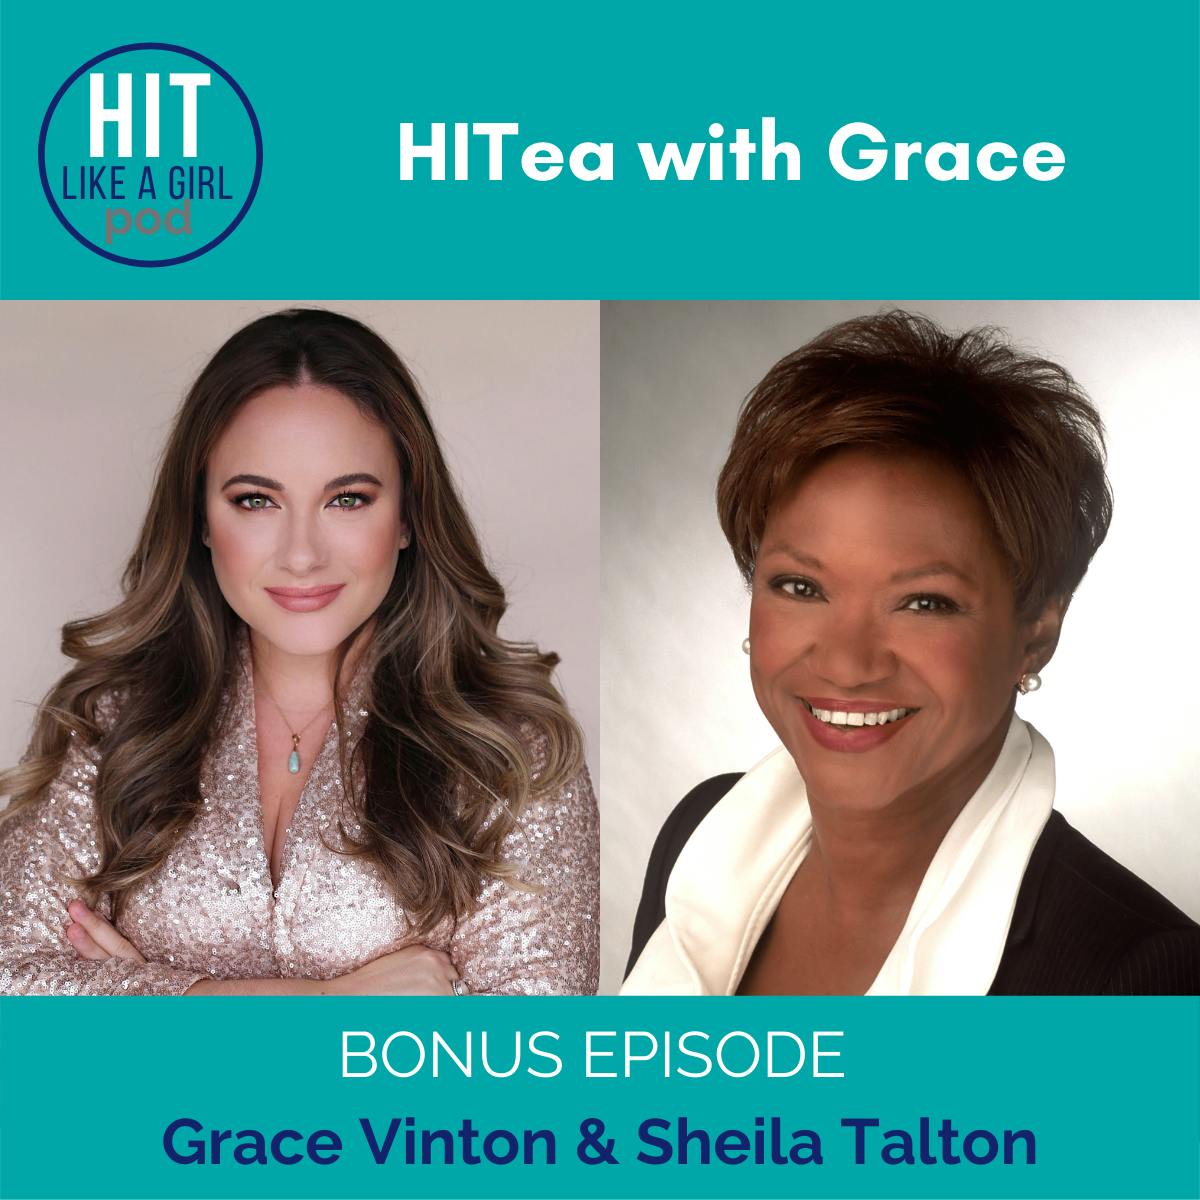 HITea with Grace: Grace Vinton interviews Sheila Talton